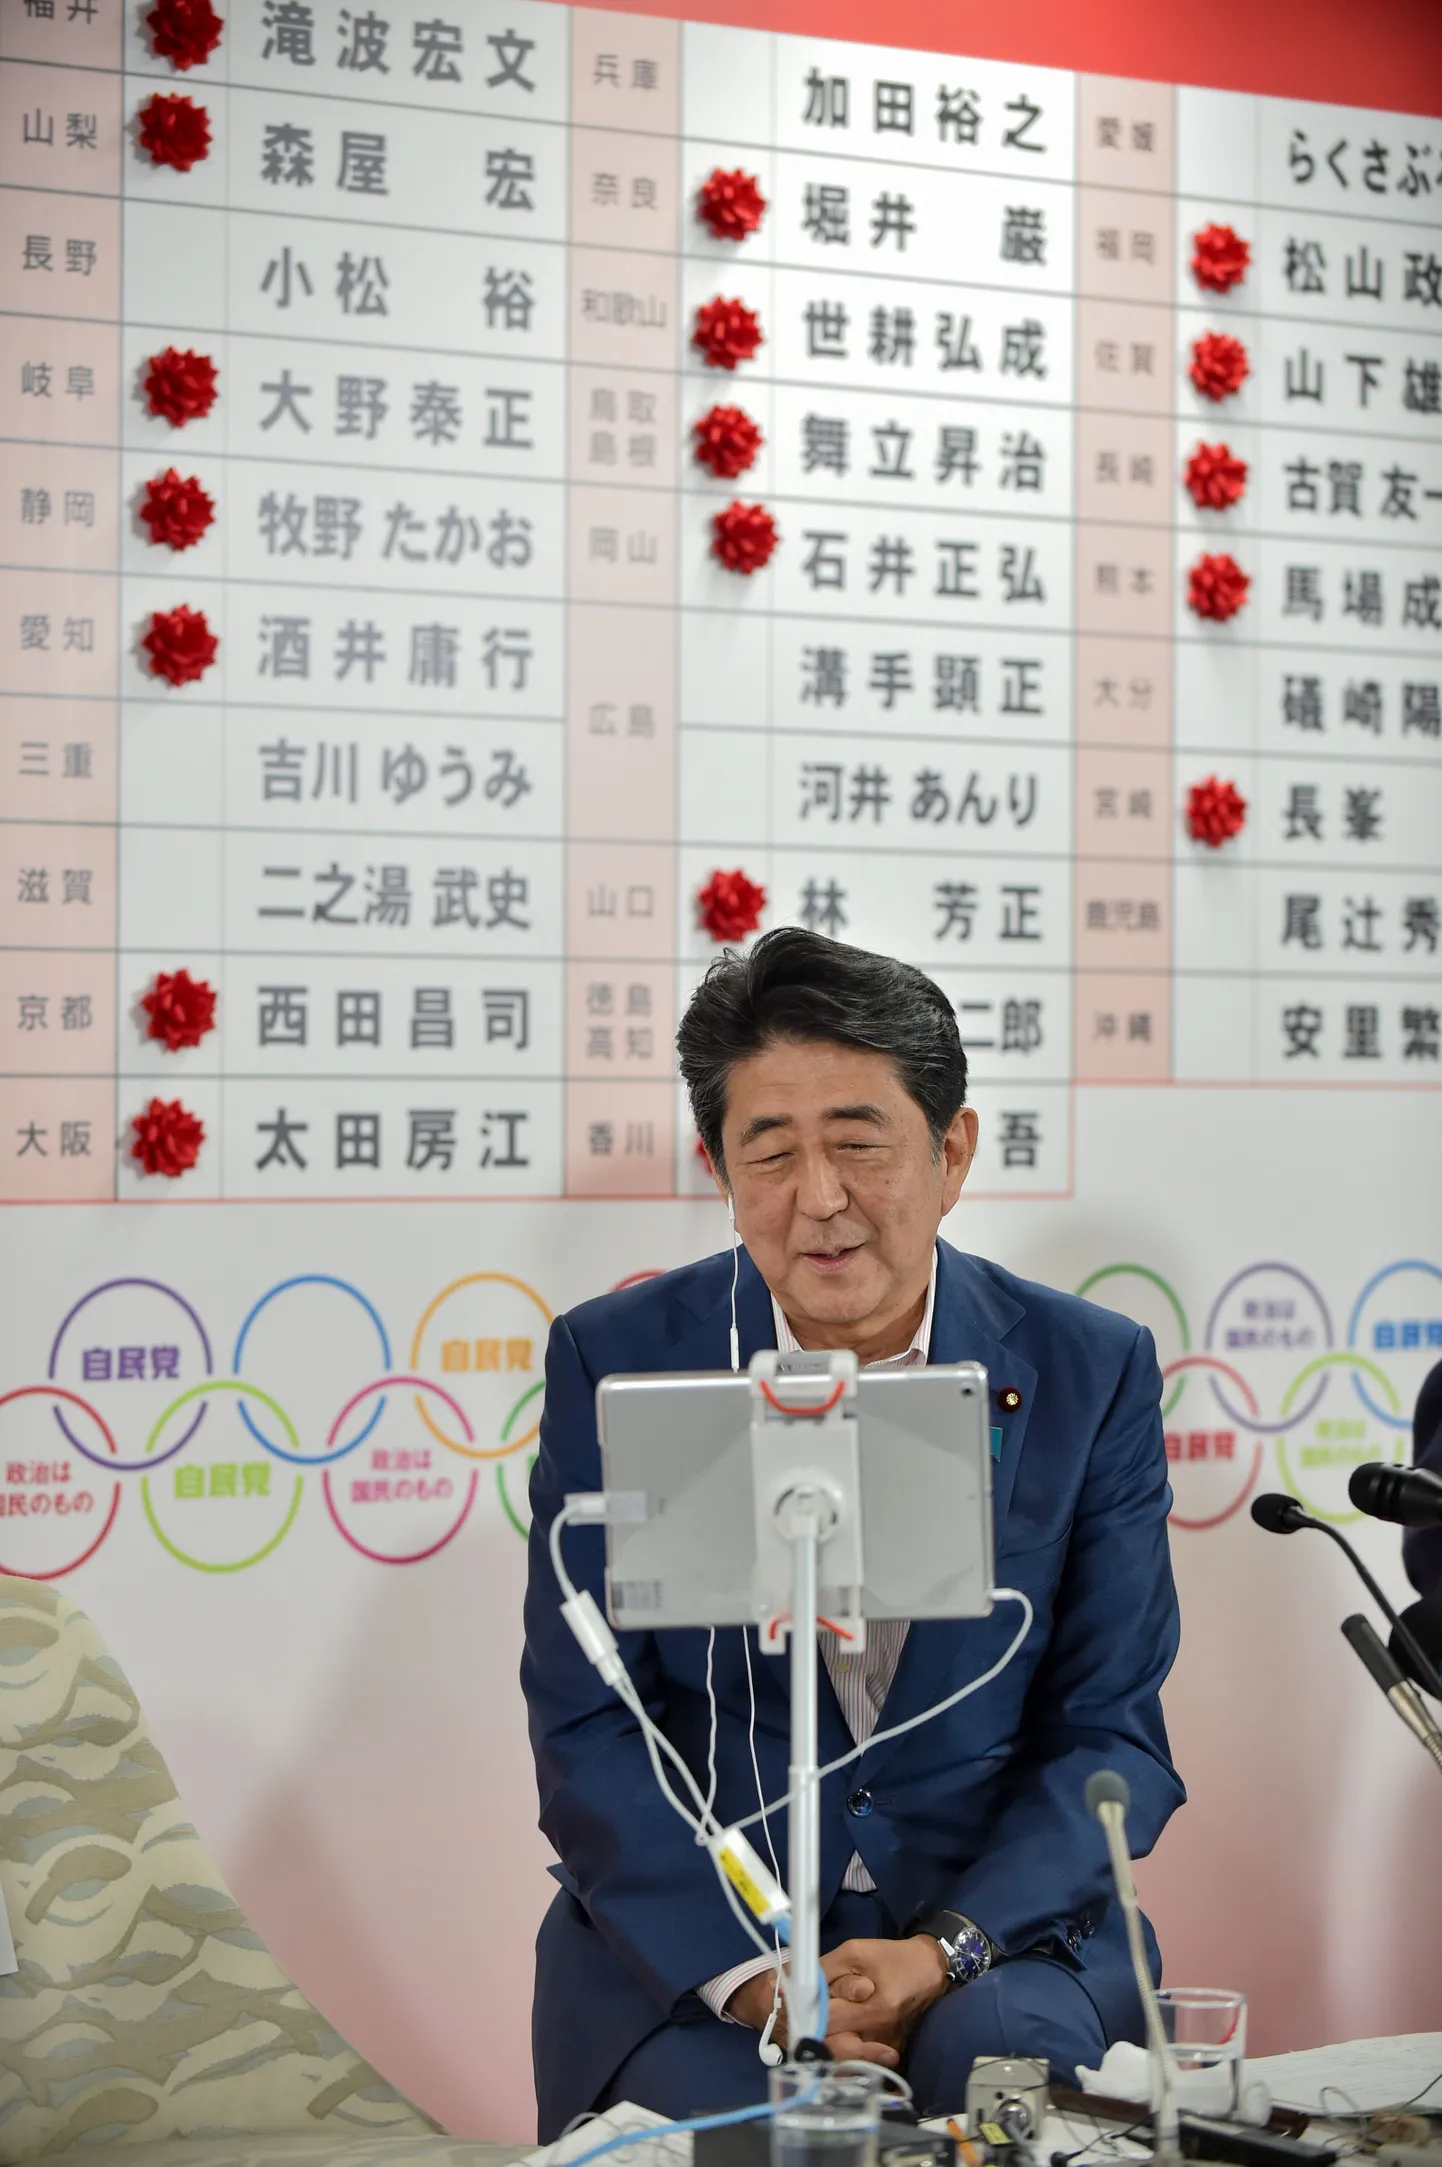 Jaapani peaminister Shinzo Abe pühapäeval Tokyos oma Liberaaldemokraatliku Partei (LDP) peakorteris pärast valimisvõitu parlamendi ülemkoja valimistel meedia küsimustele vastamas.